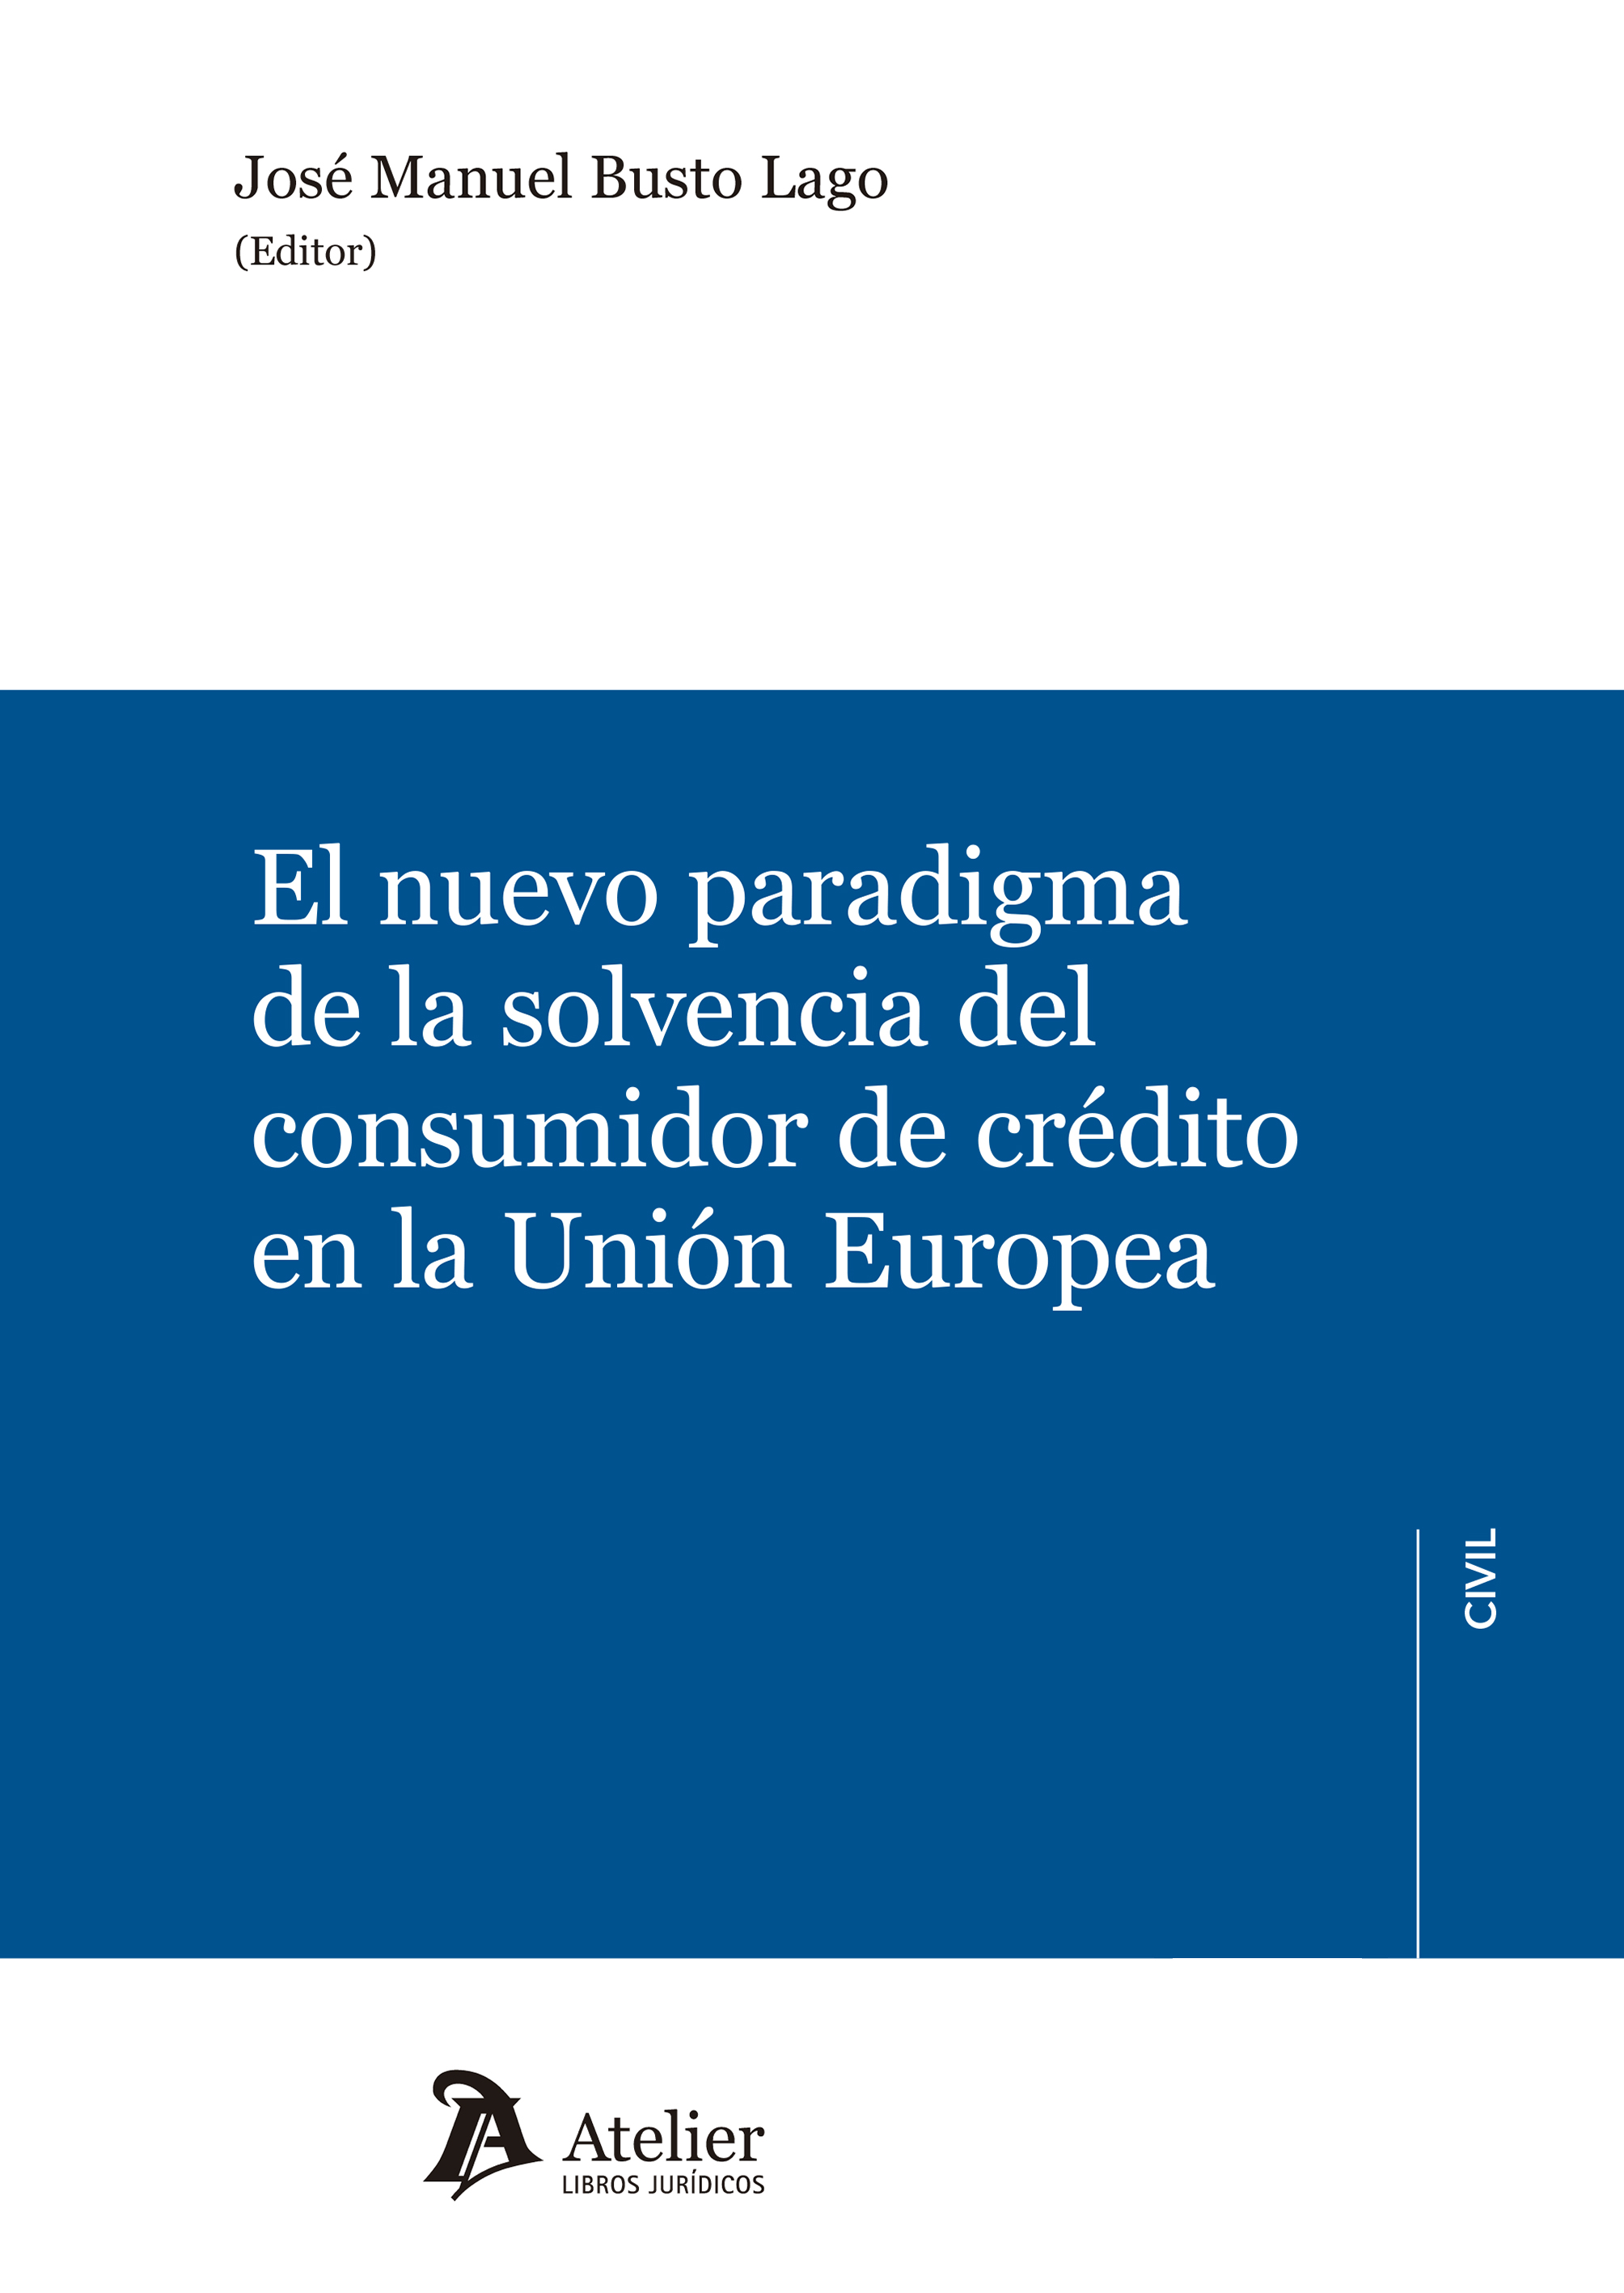 Imagen de portada del libro El nuevo paradigma de la solvencia del consumidor de crédito en la Unión Europea